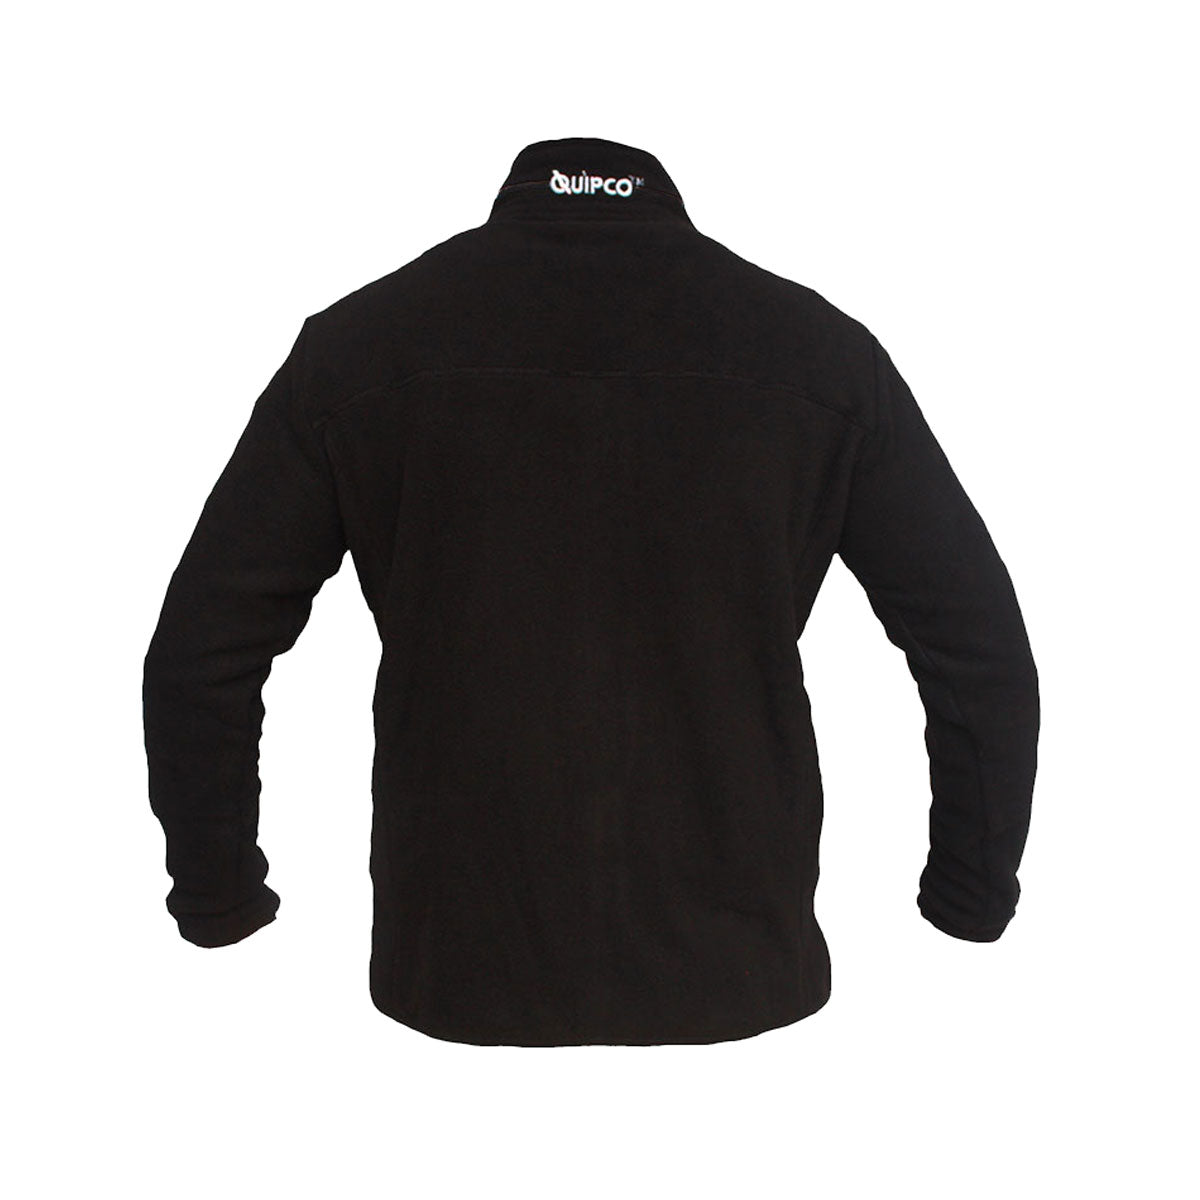 QuipCo Tundra 100 Fleece Warm Jacket (Black) - Outdoor Travel Gear 3